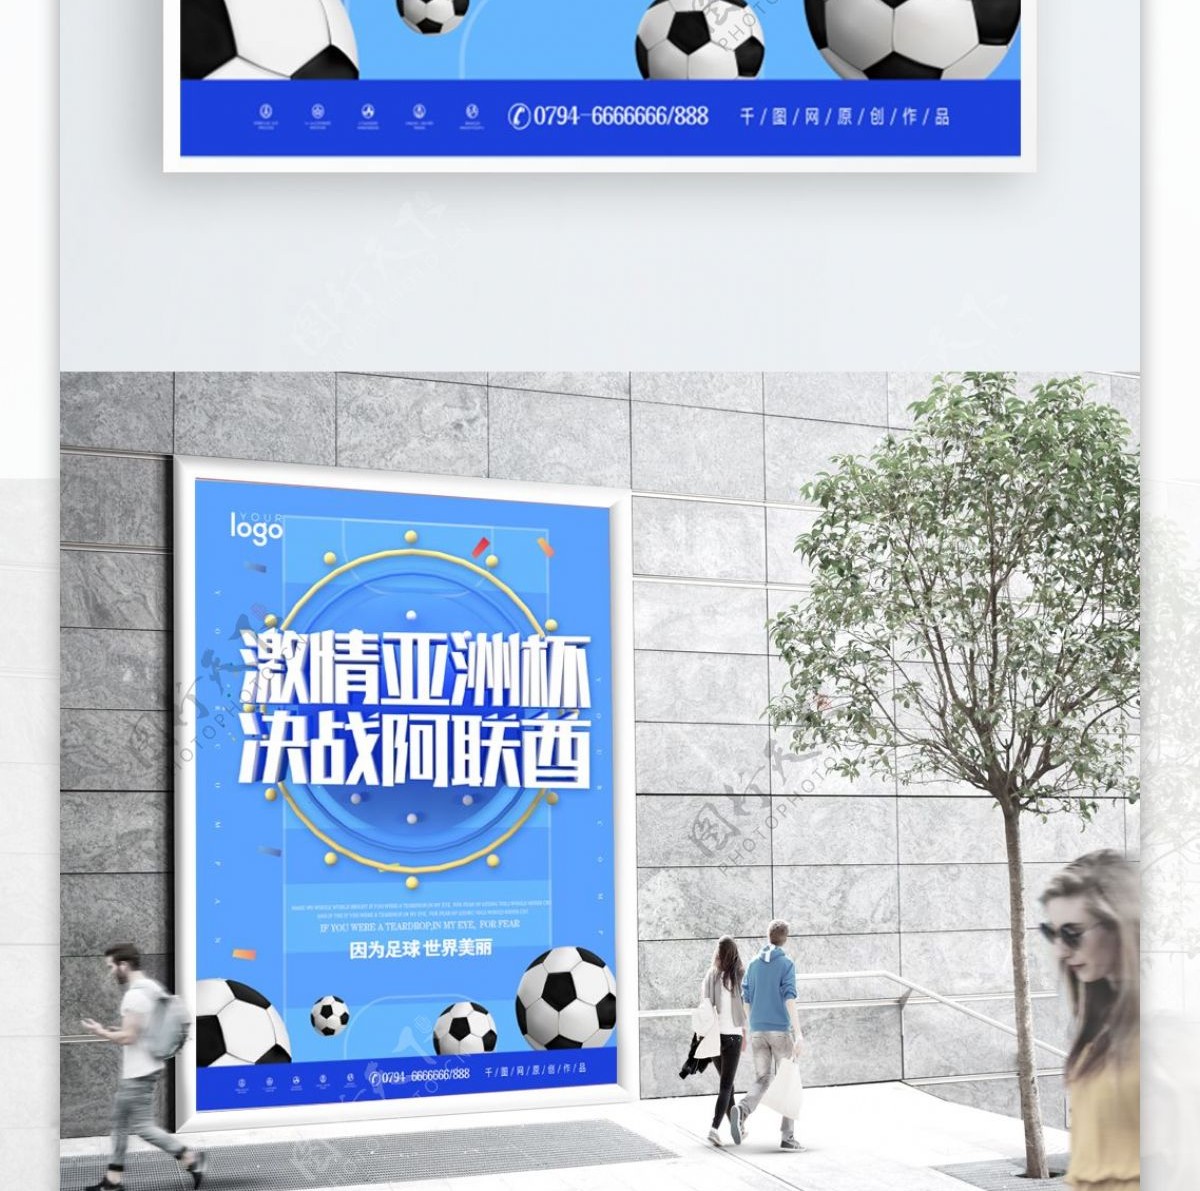 蓝色大气决战亚洲杯足球海报